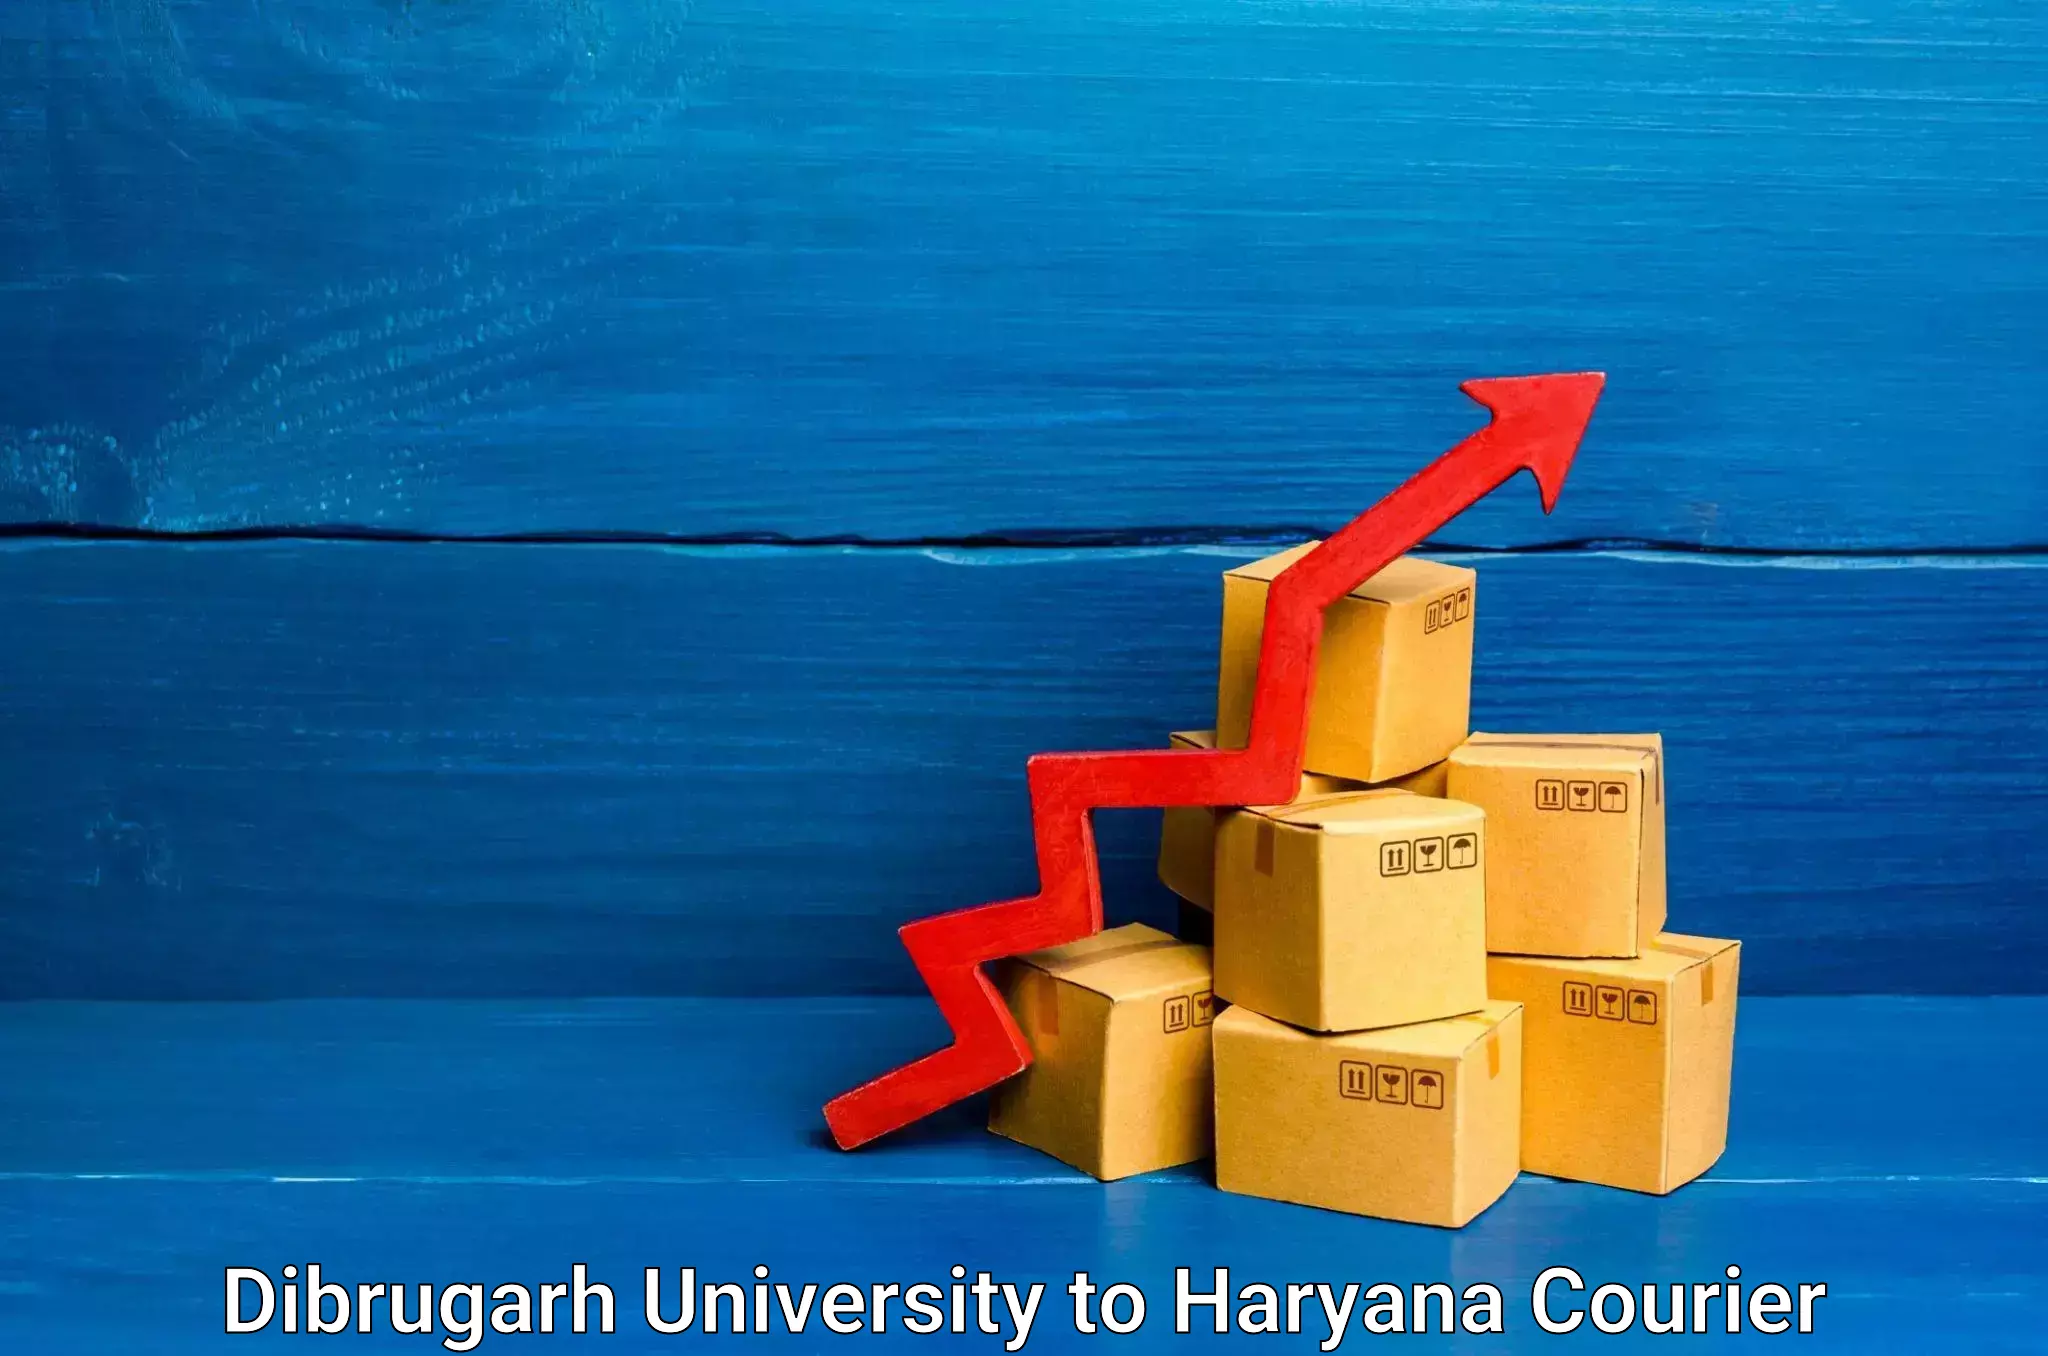 Ground shipping Dibrugarh University to Gurugram